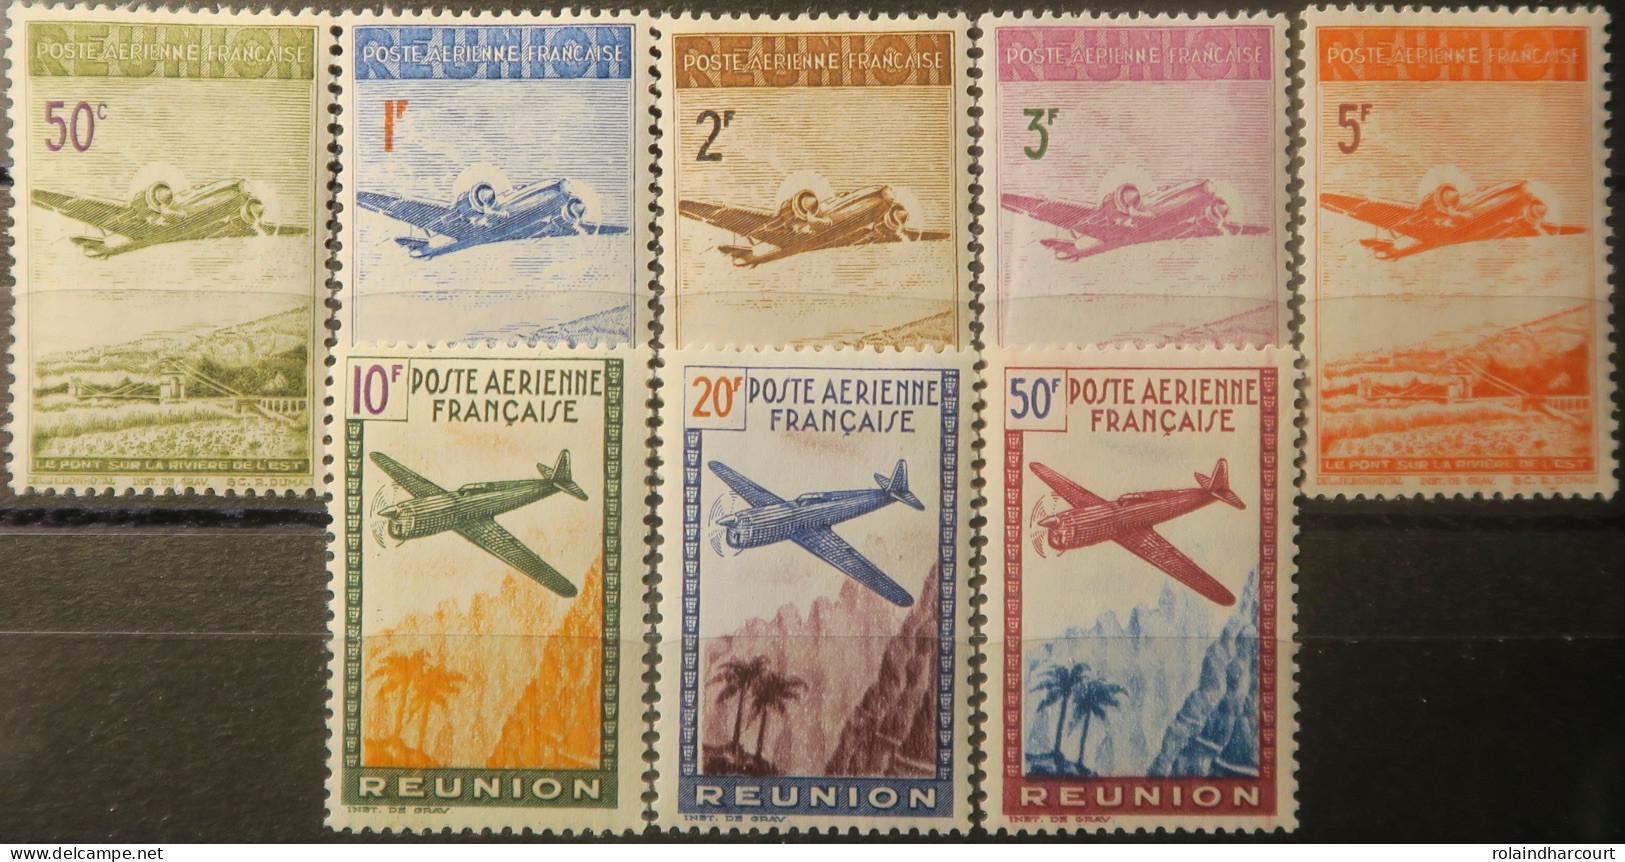 R2253/712 - COLONIES FRANÇAISES - 1942 - REUNION - POSTE AERIENNE - SERIE COMPLETE - N°10 à 17 NEUFS* - Poste Aérienne